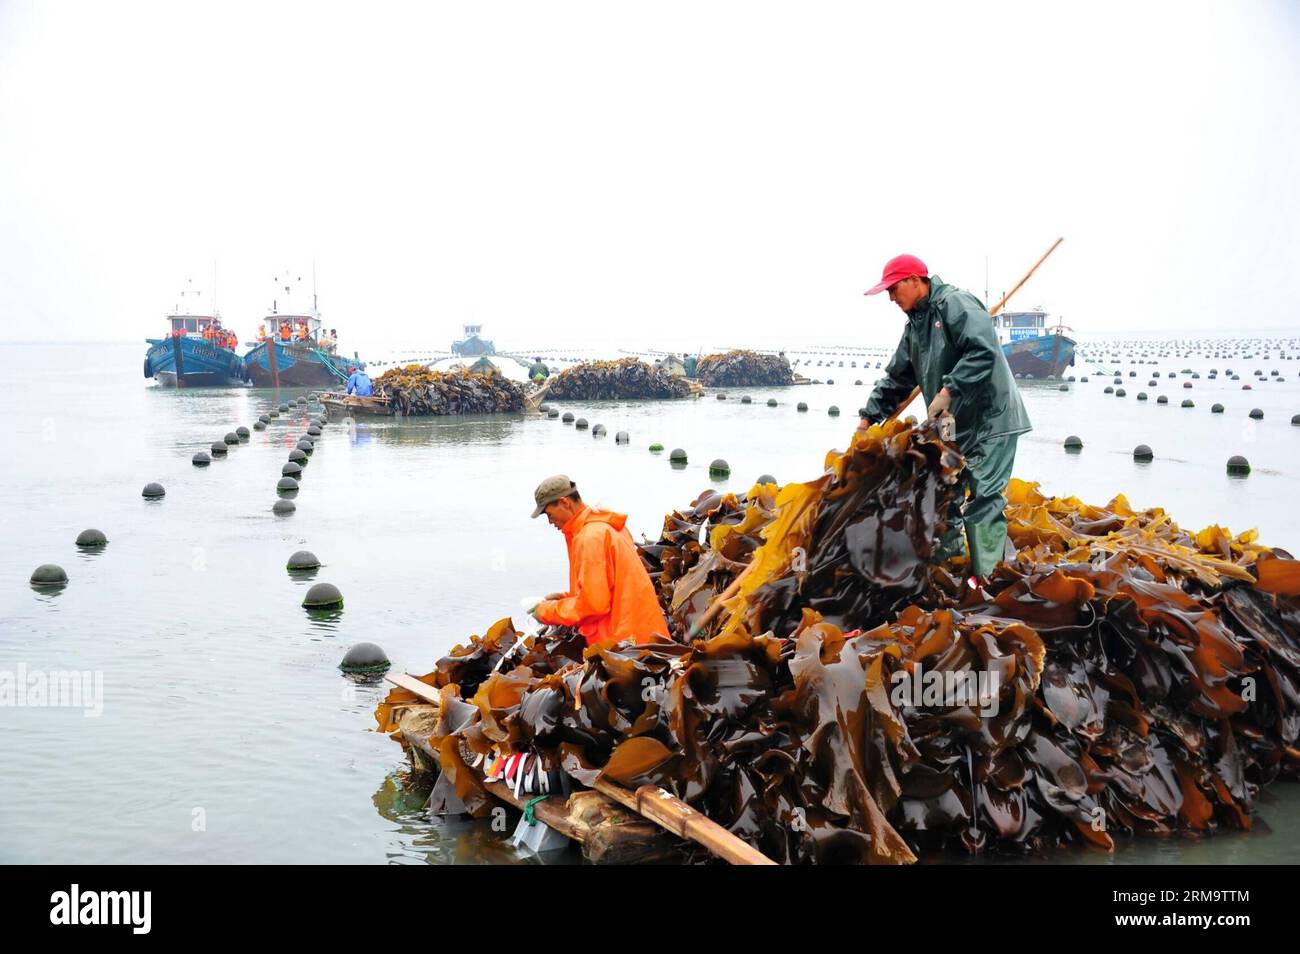 I lavoratori raccolgono alghe marine al largo della costa di Rongcheng, provincia dello Shandong della Cina orientale, 1° giugno 2014. A Rongcheng, i lavoratori sono impegnati a raccogliere alghe commestibili man mano che arriva la stagione del raccolto. Rongcheng è un'importante piantatrice e produttrice di alghe marine commestibili in Cina, producendo ogni anno oltre la metà dei prodotti di alghe marine del paese. (Xinhua/Ren Mengxue) (lmm) CHINA-SHANDONG-RONGCHENG-SEAWEED-HARVEST (CN) PUBLICATIONxNOTxINxCHN Workers Harvest Seaweeds off the Coast of Rongcheng East China S Shan Dong Province 1 giugno 2014 a Rongcheng i lavoratori sono impegnati a raccogliere alghe commestibili come stagione della vendemmia Foto Stock